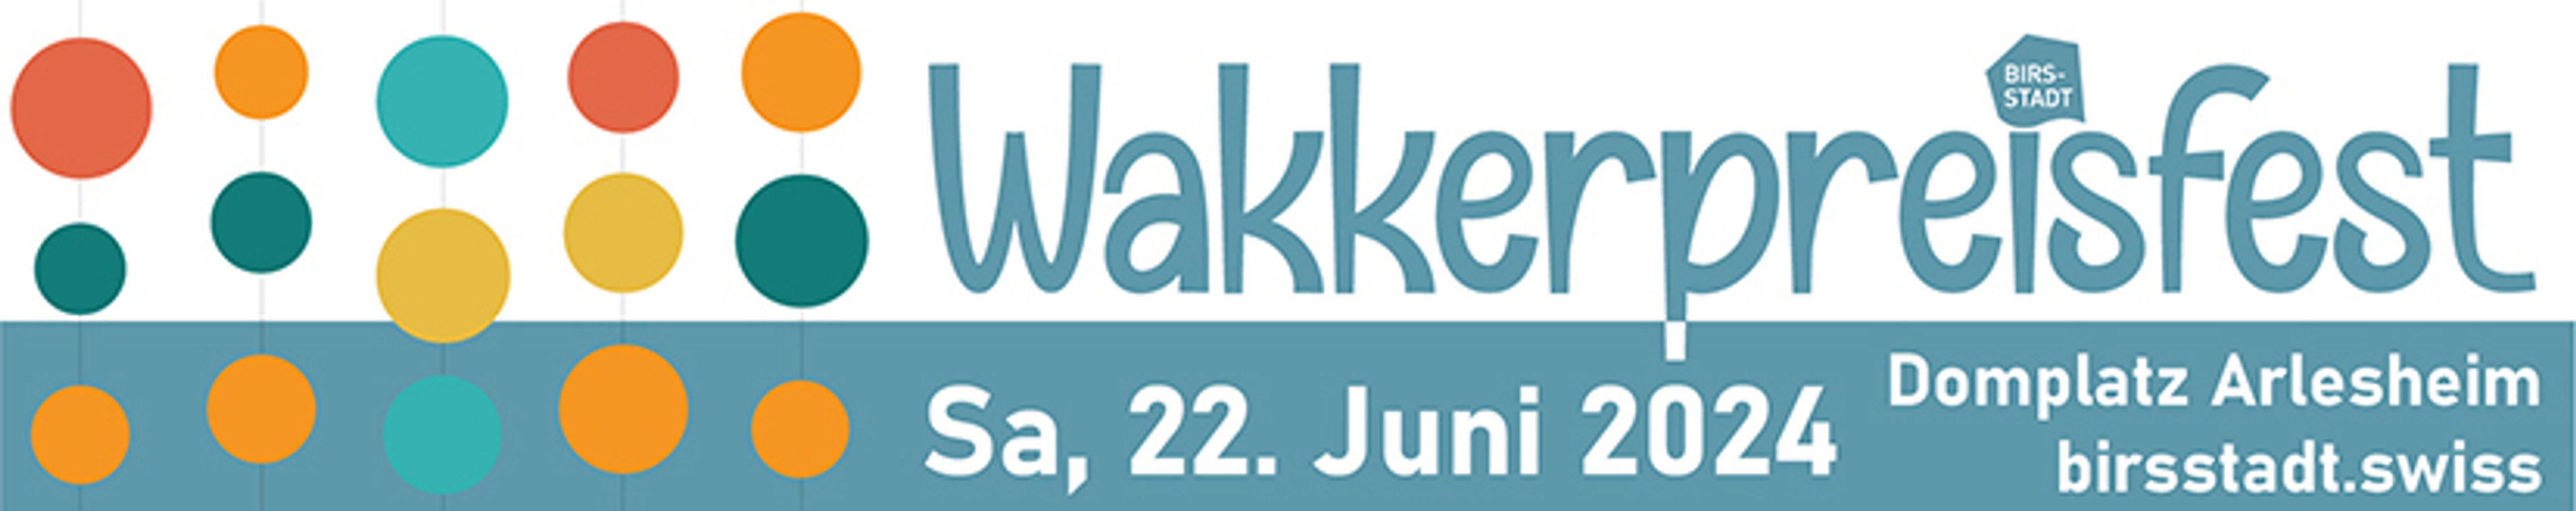 Wakkerpreisfest